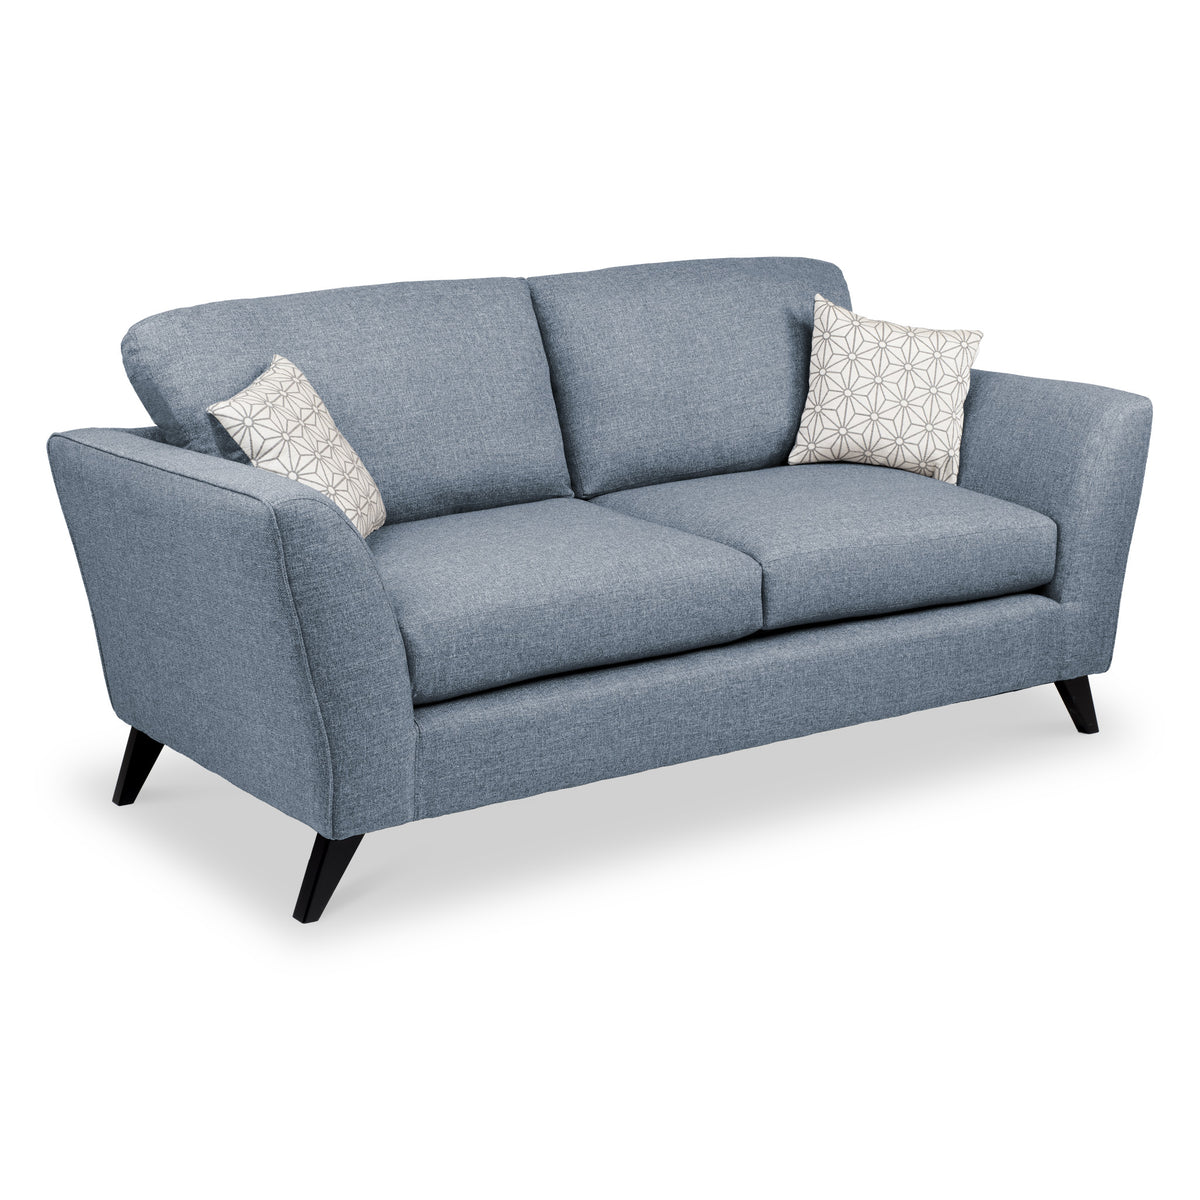 Geo 3 Seater Sofa in Denim by Roseland Furniture